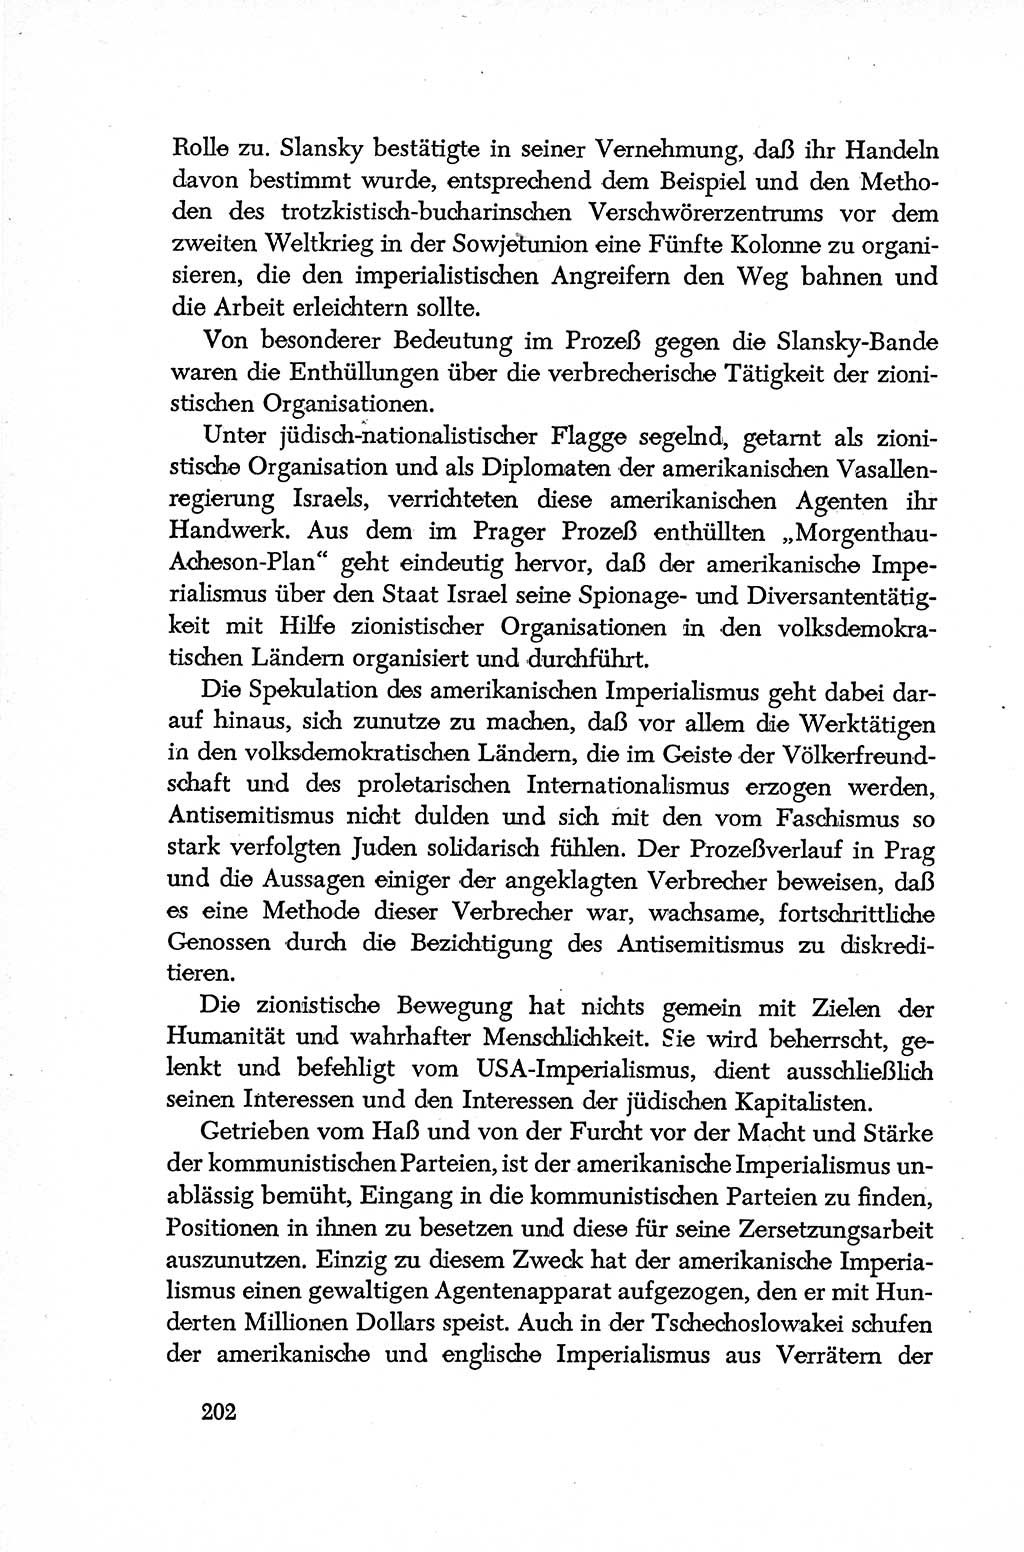 Dokumente der Sozialistischen Einheitspartei Deutschlands (SED) [Deutsche Demokratische Republik (DDR)] 1952-1953, Seite 202 (Dok. SED DDR 1952-1953, S. 202)